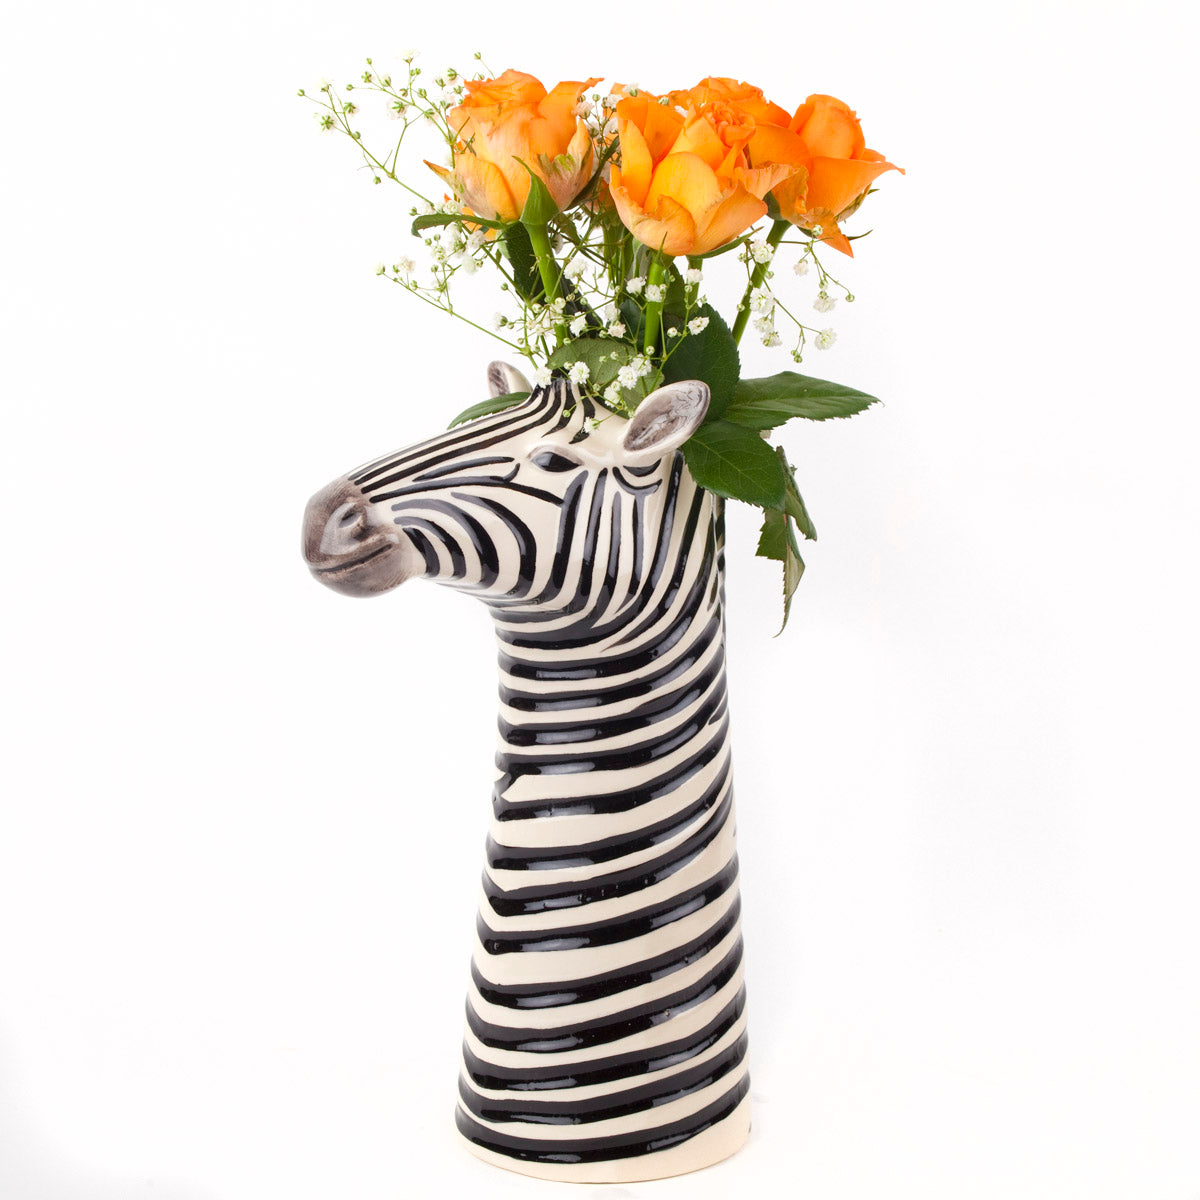 Rhino Flower Vase Quail Ceramics